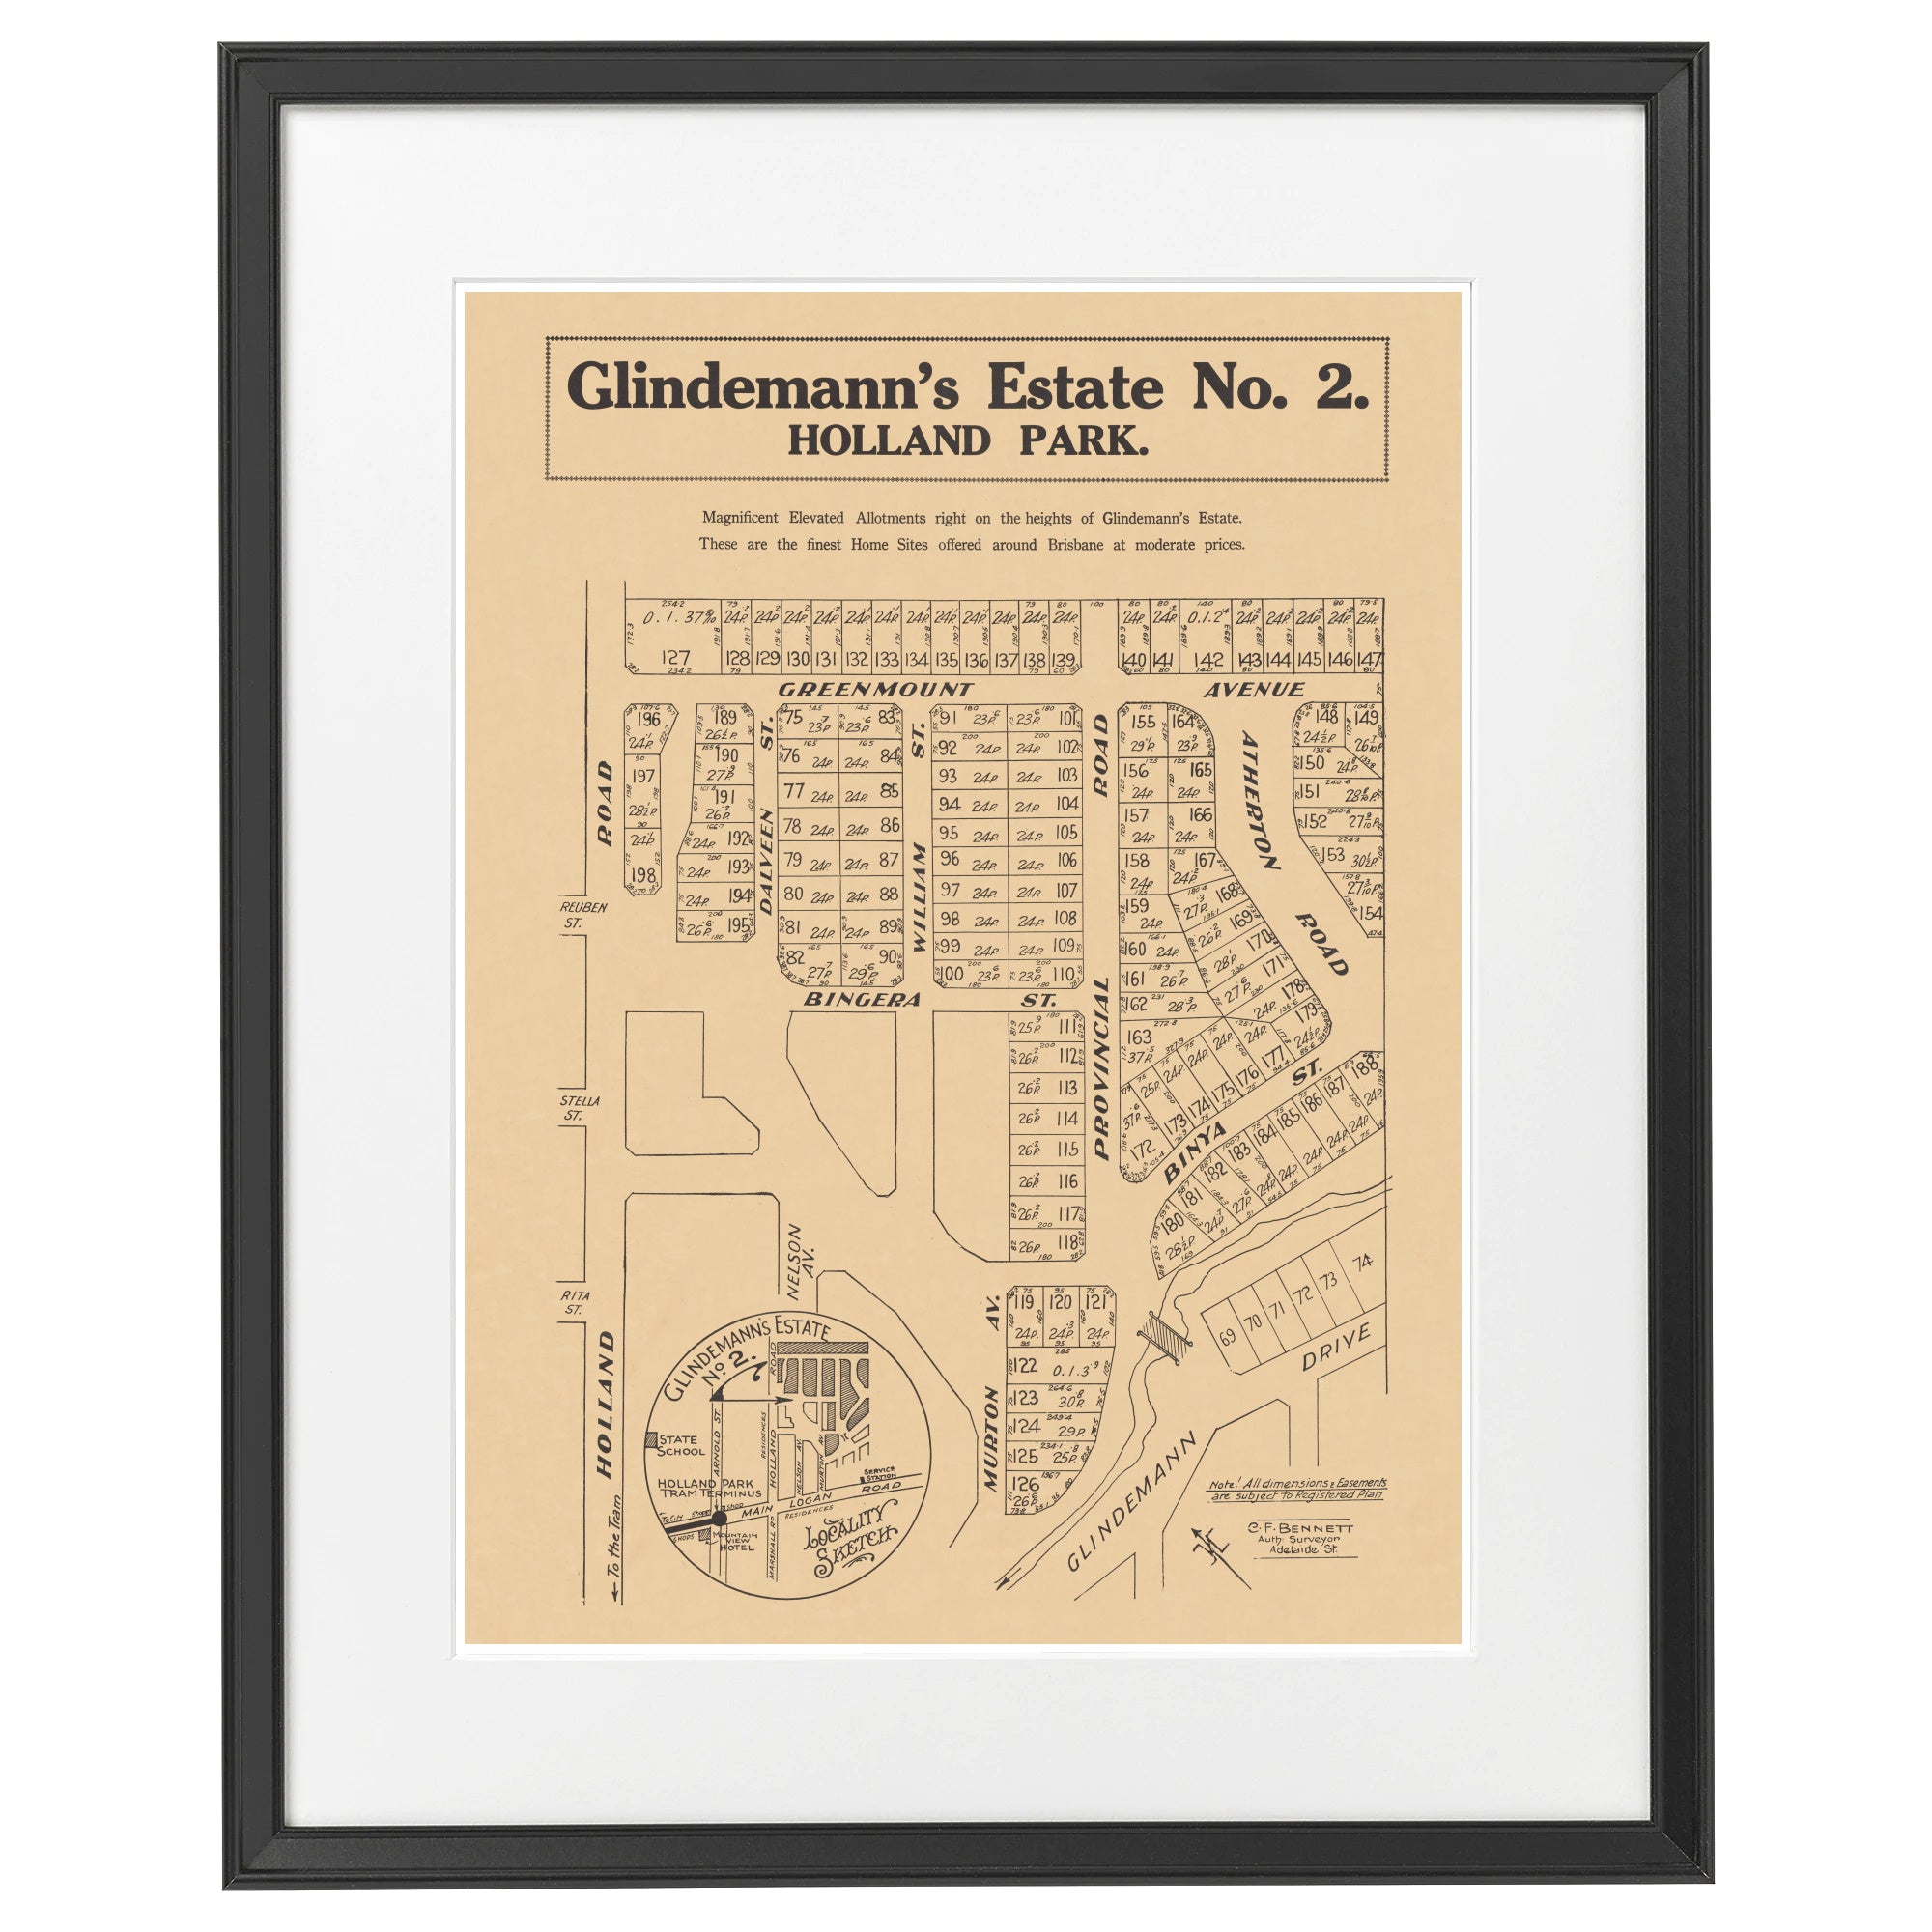 1937 Holland Park - Glindemann's Estate No. 2